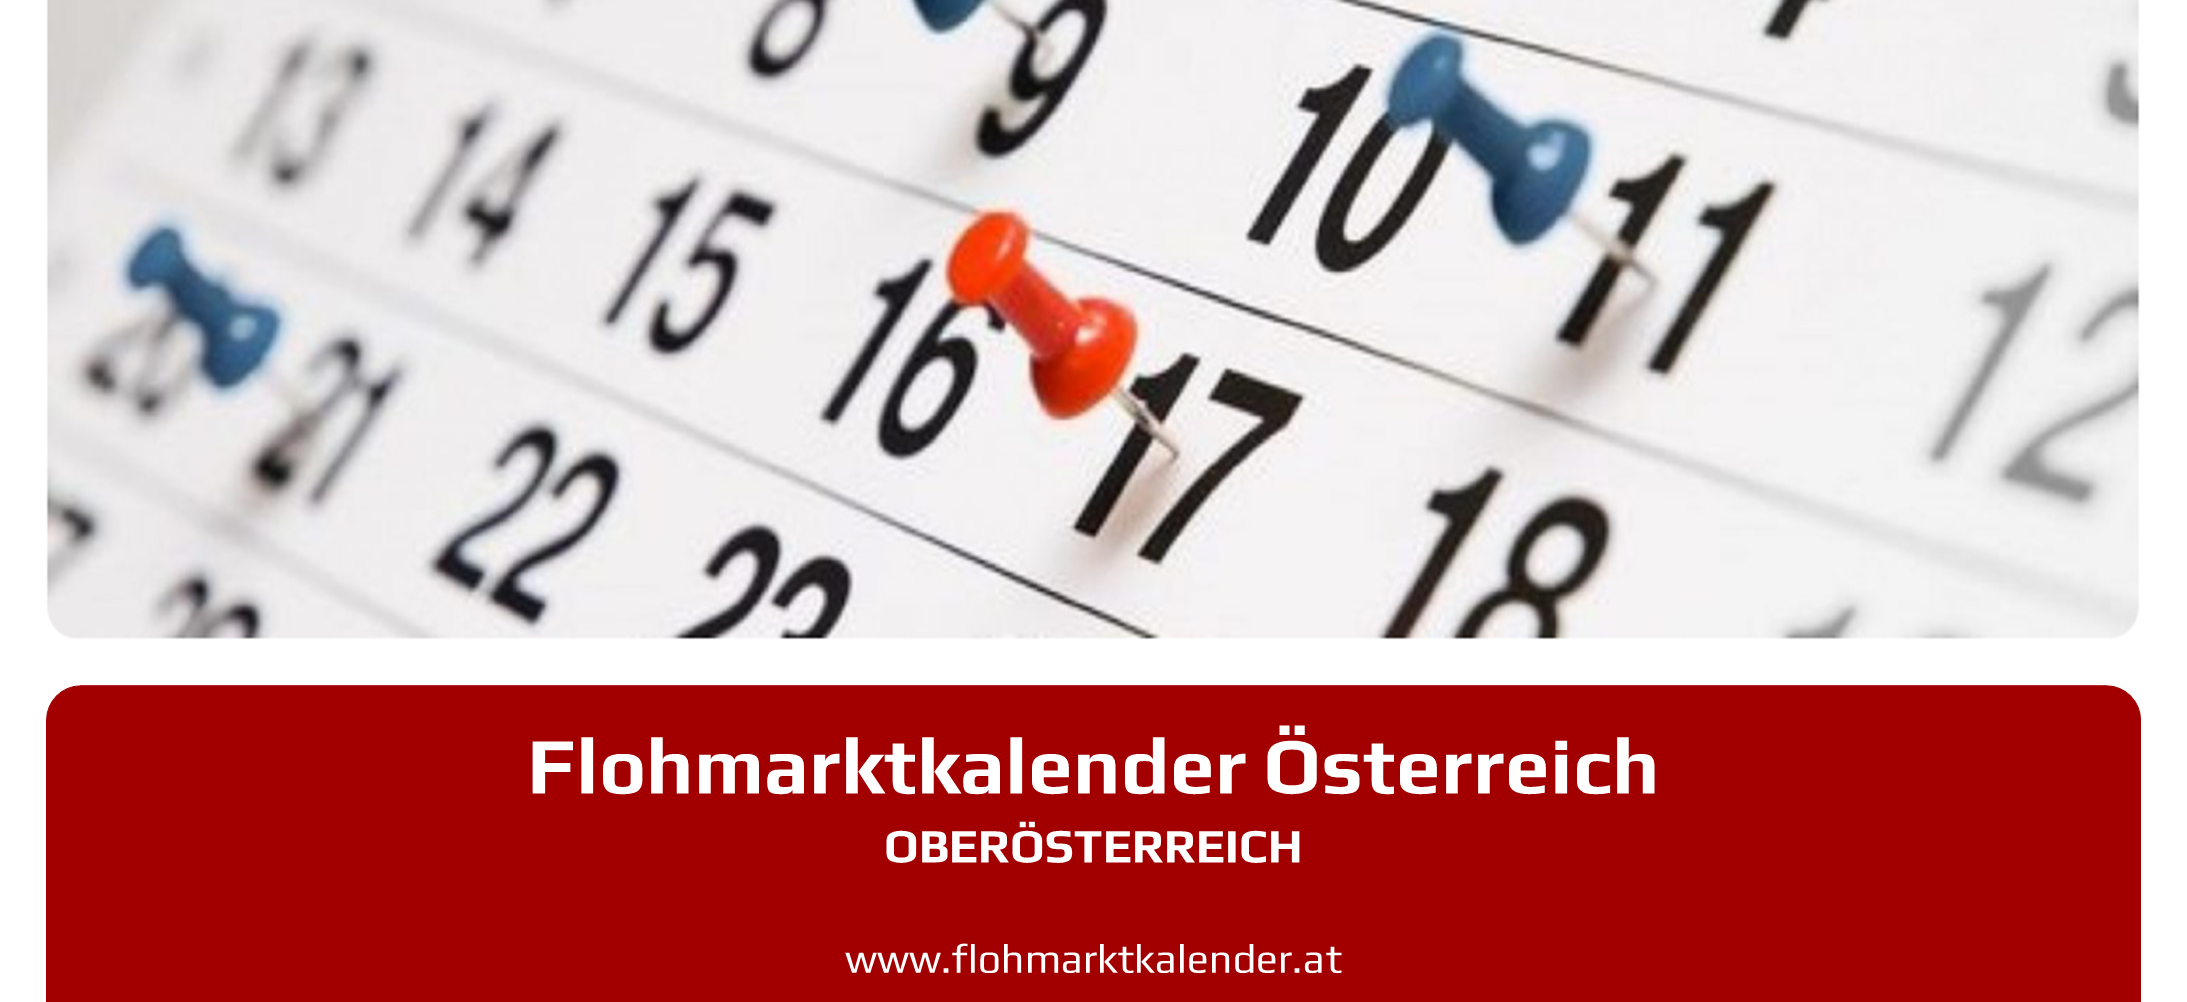 Flohmarktkalender Oberoesterreich 11